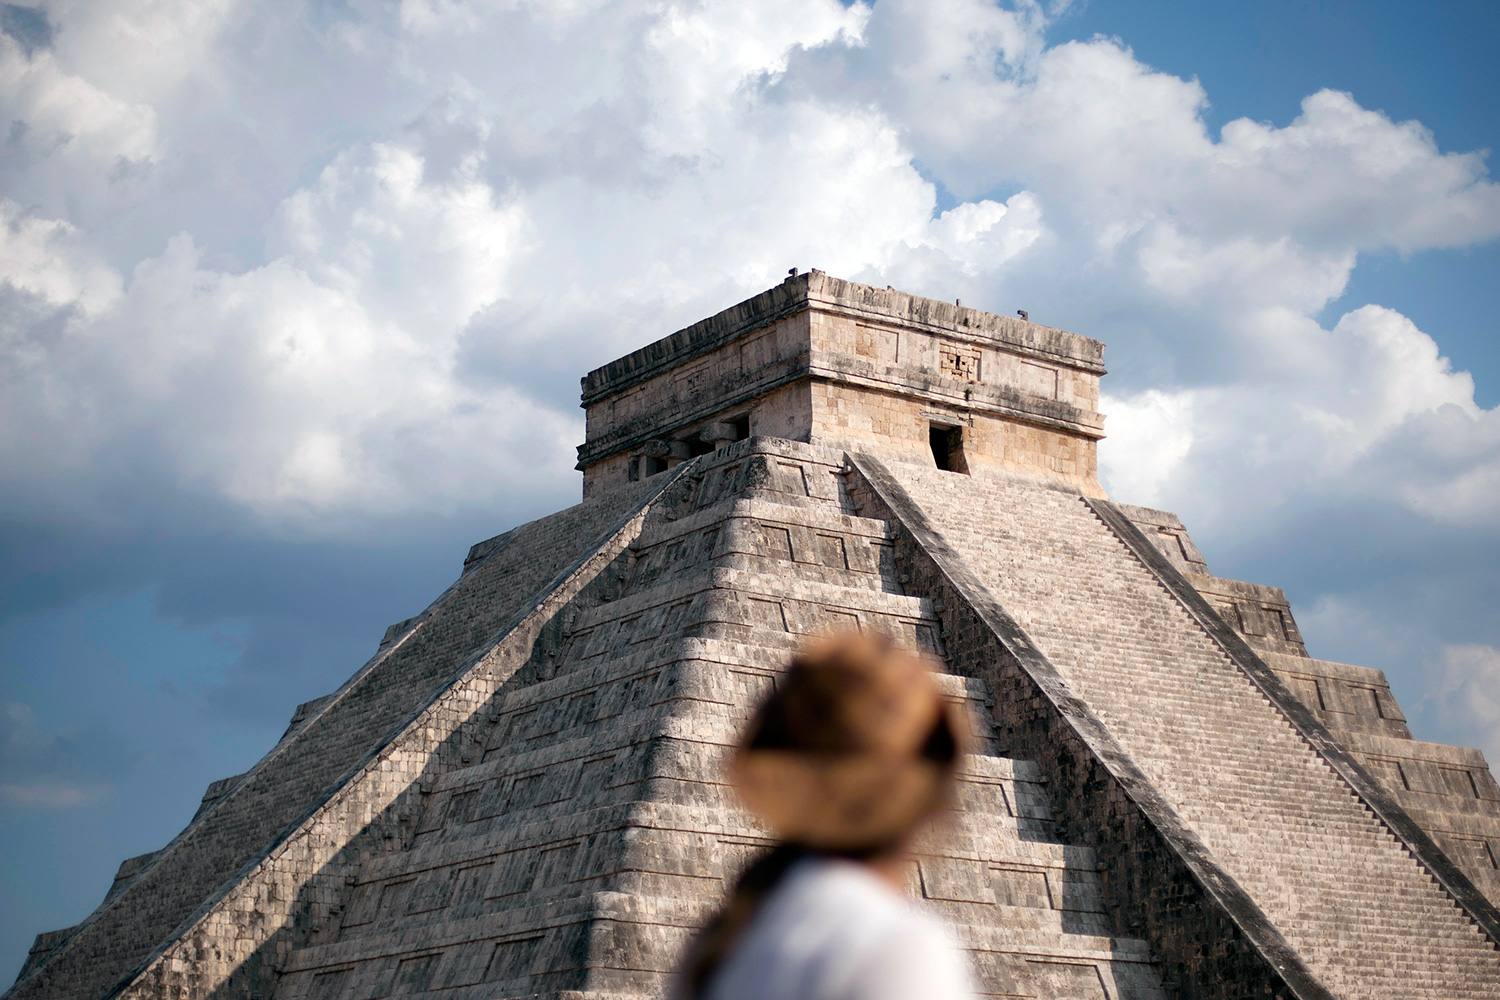 La historia del niño que descubrió él solo una ciudad maya es falsa